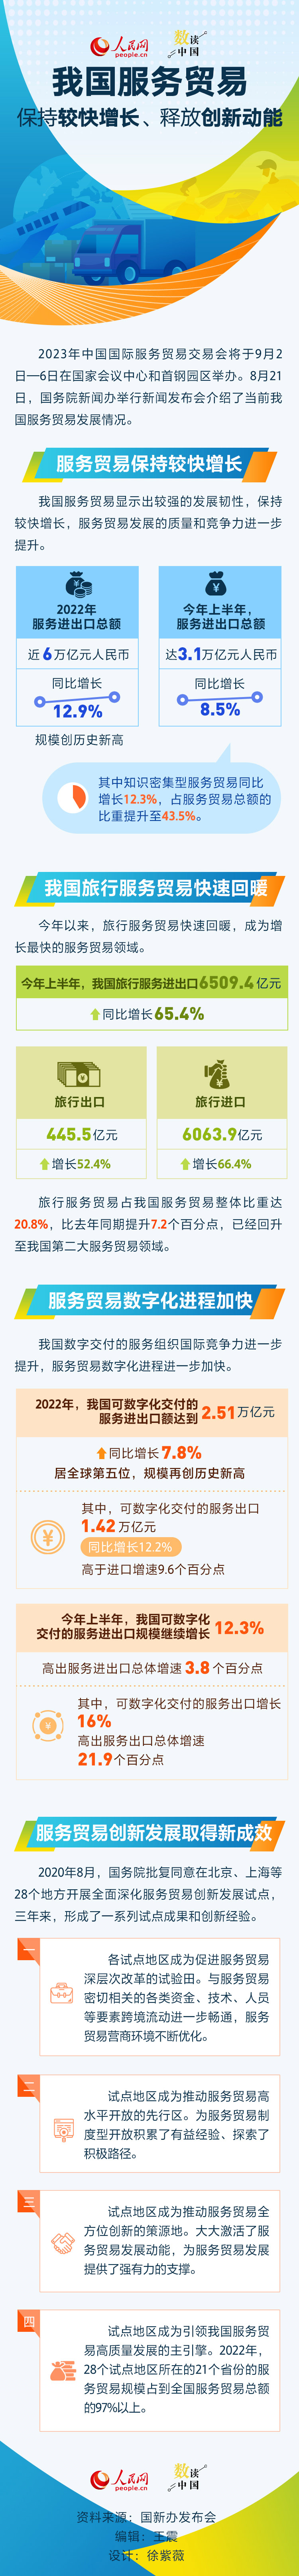 数读中国 | 我国服务贸易保持较快增长、释放创新动能